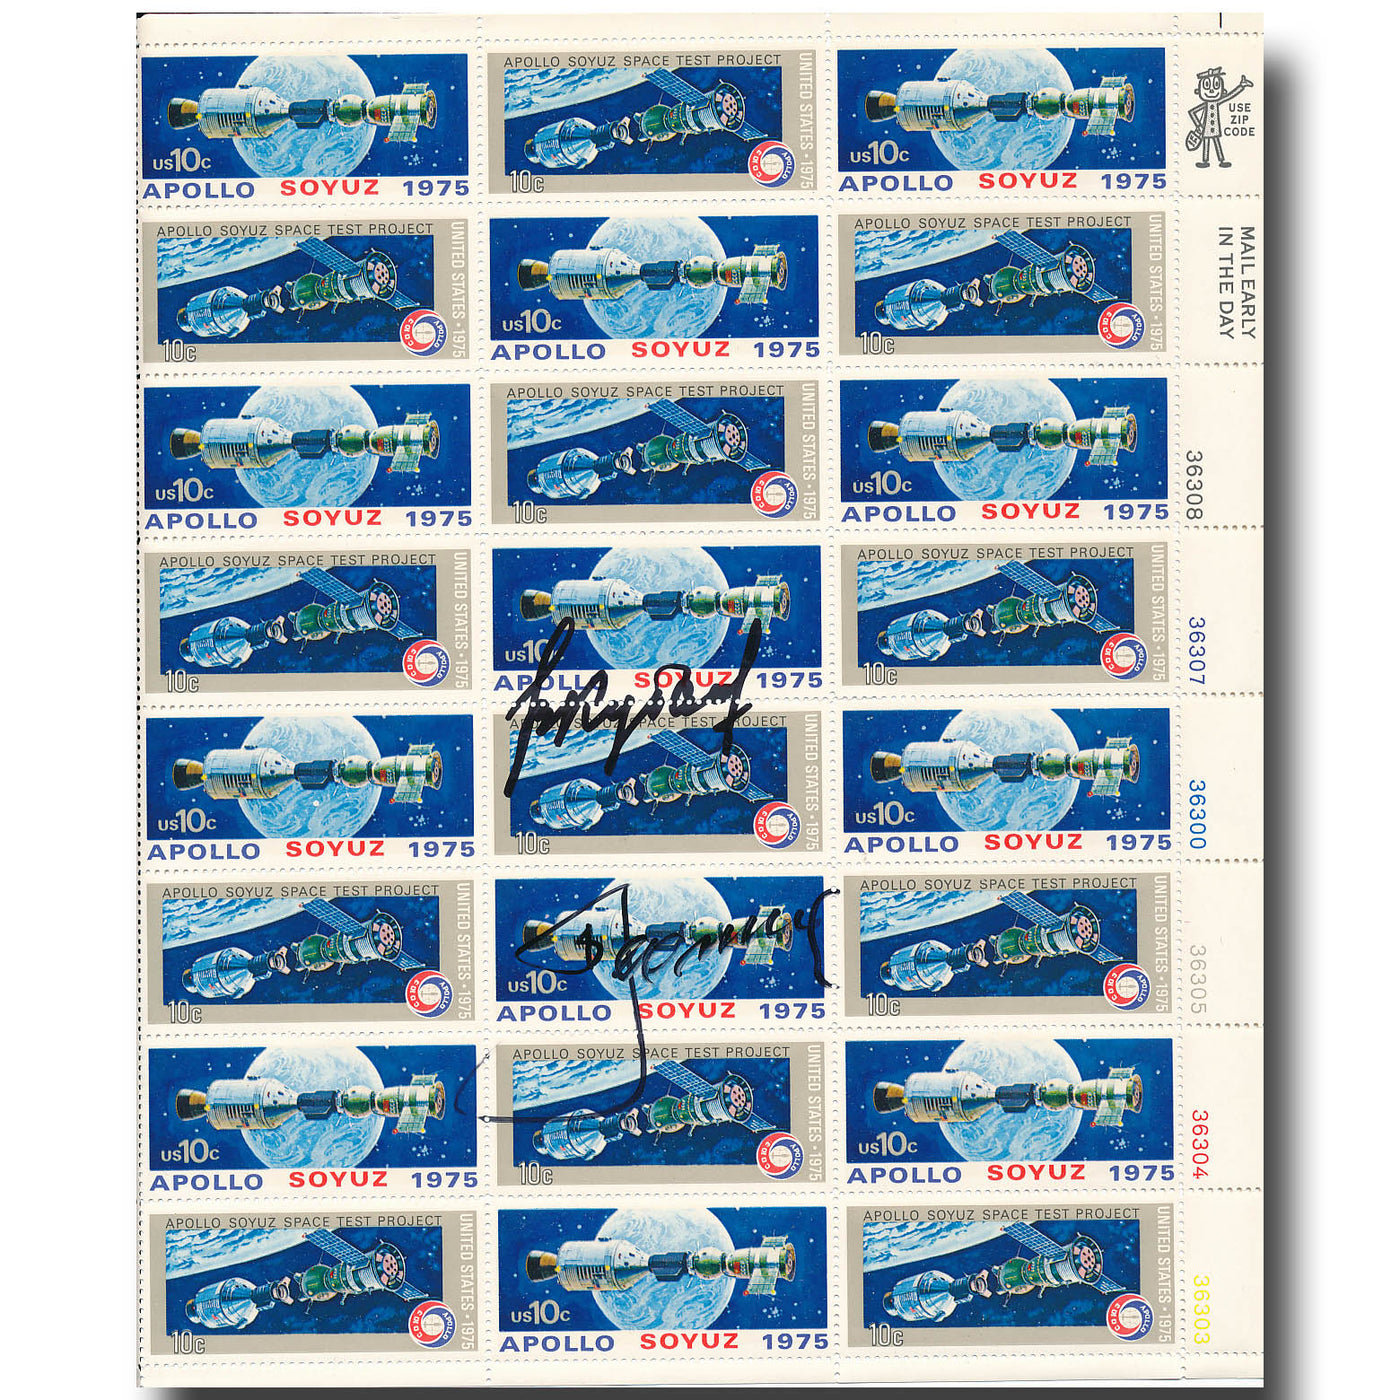 ASTP stamp sheet – Leonov + Kubassov